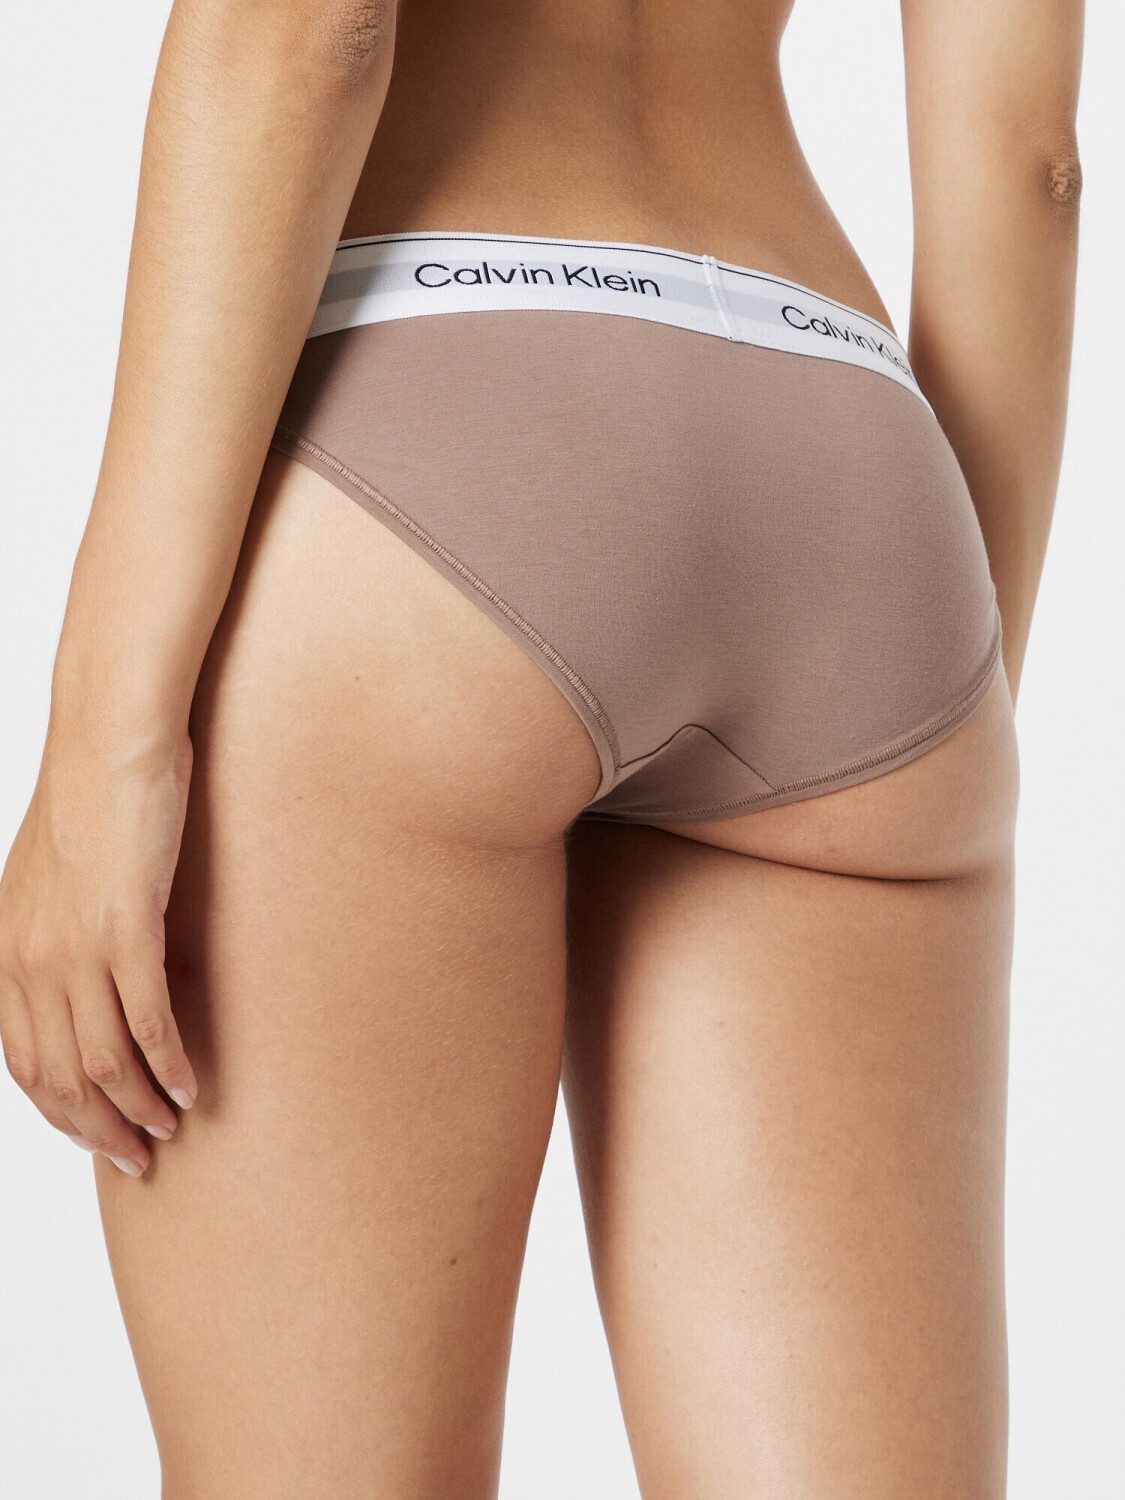 Calvin Klein Underwear HIPSTER 5 PACK - Briefs - naturals/beige - Zalando.de